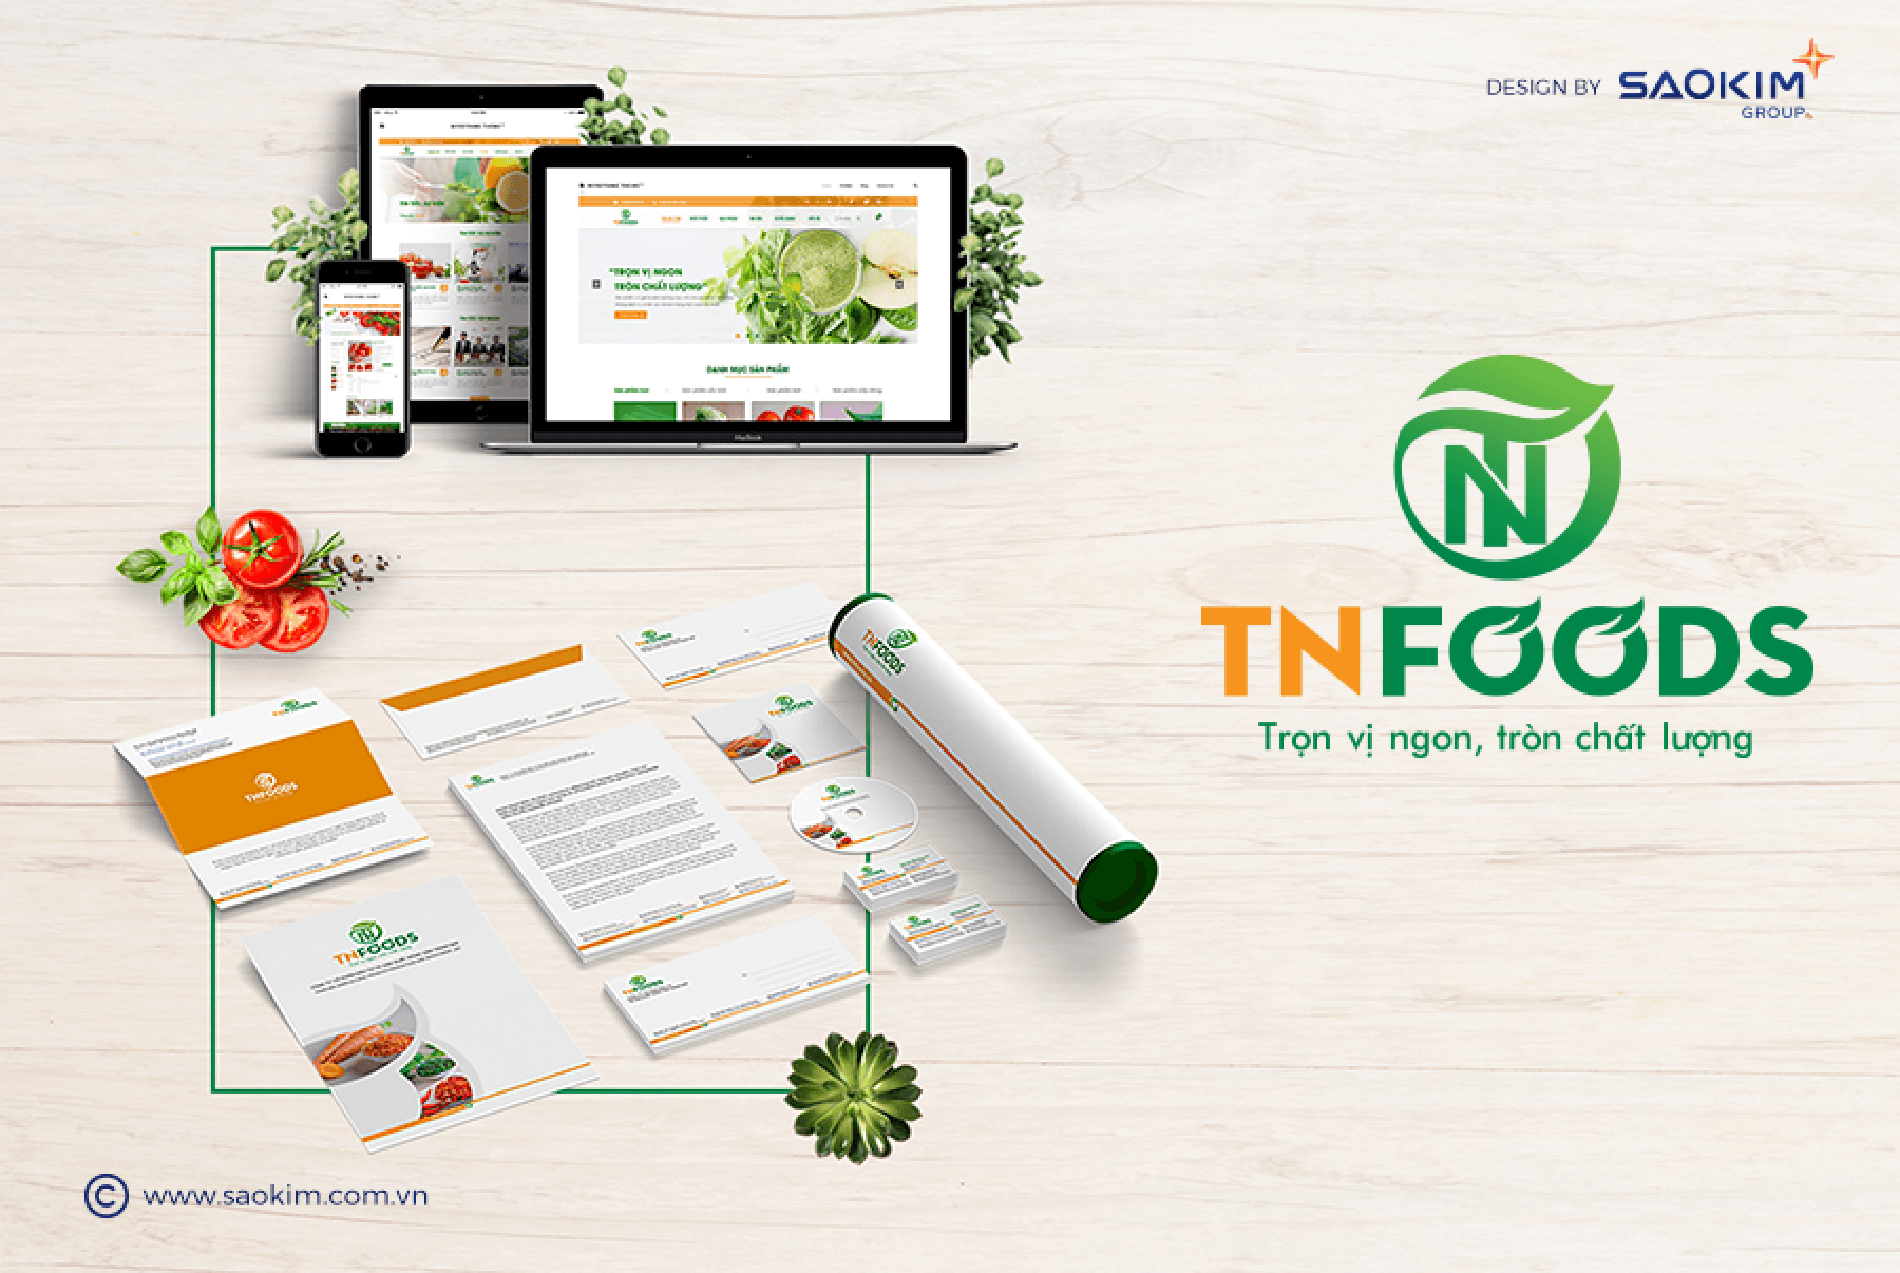 Dự án thiết kế thương hiệu, thiết kế website, nhận diện TN FOODS - 18